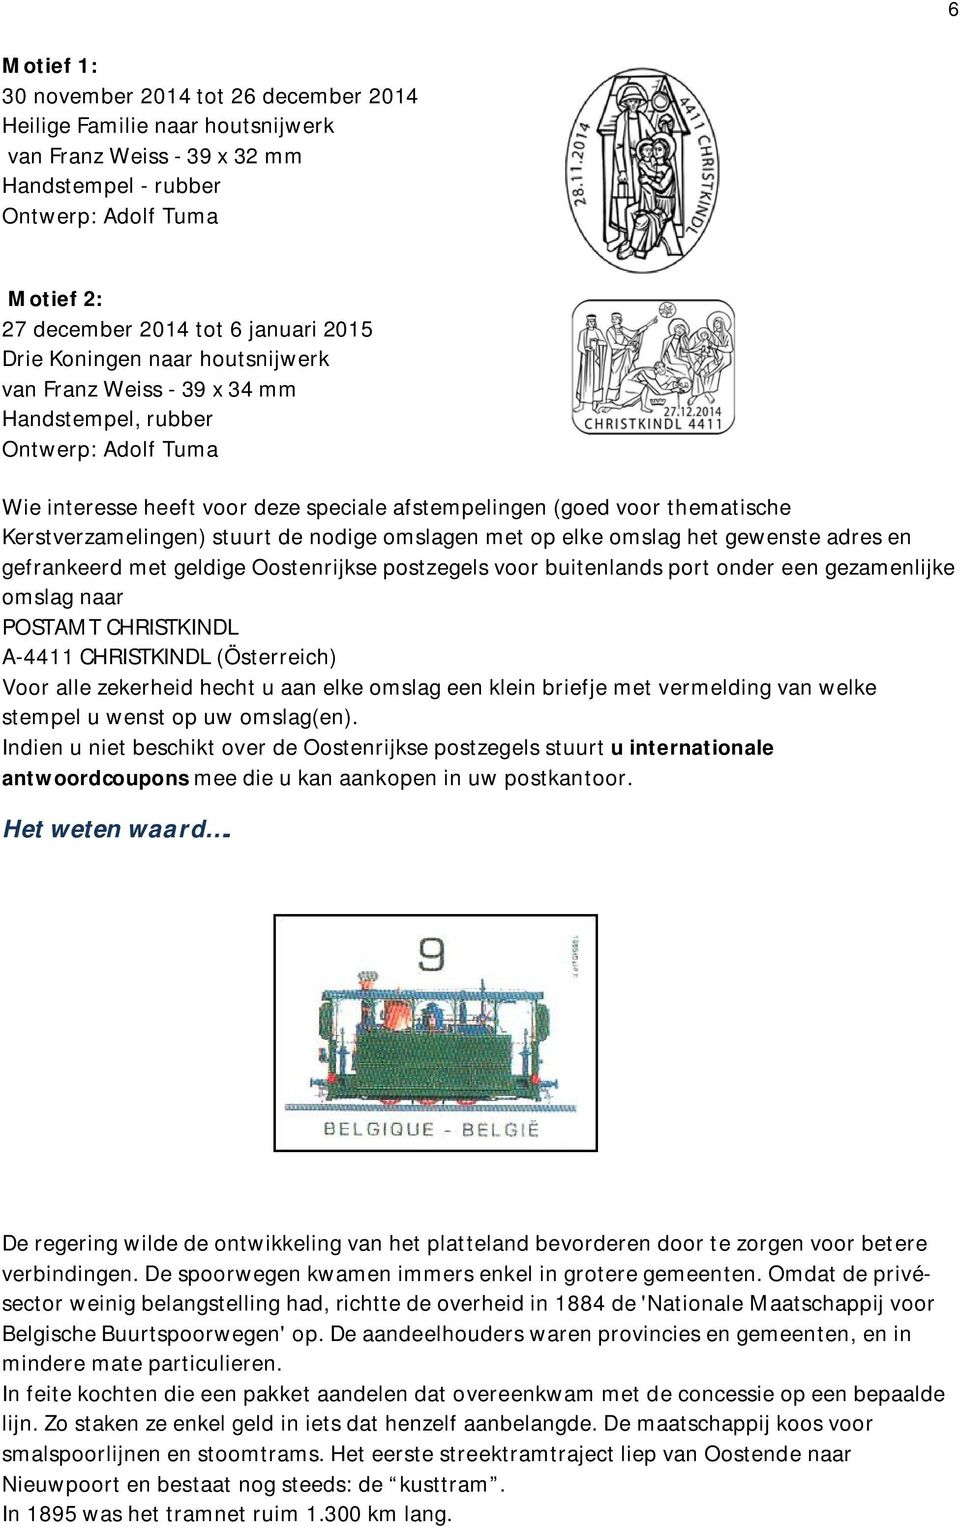 stuurt de nodige omslagen met op elke omslag het gewenste adres en gefrankeerd met geldige Oostenrijkse postzegels voor buitenlands port onder een gezamenlijke omslag naar POSTAMT CHRISTKINDL A-4411